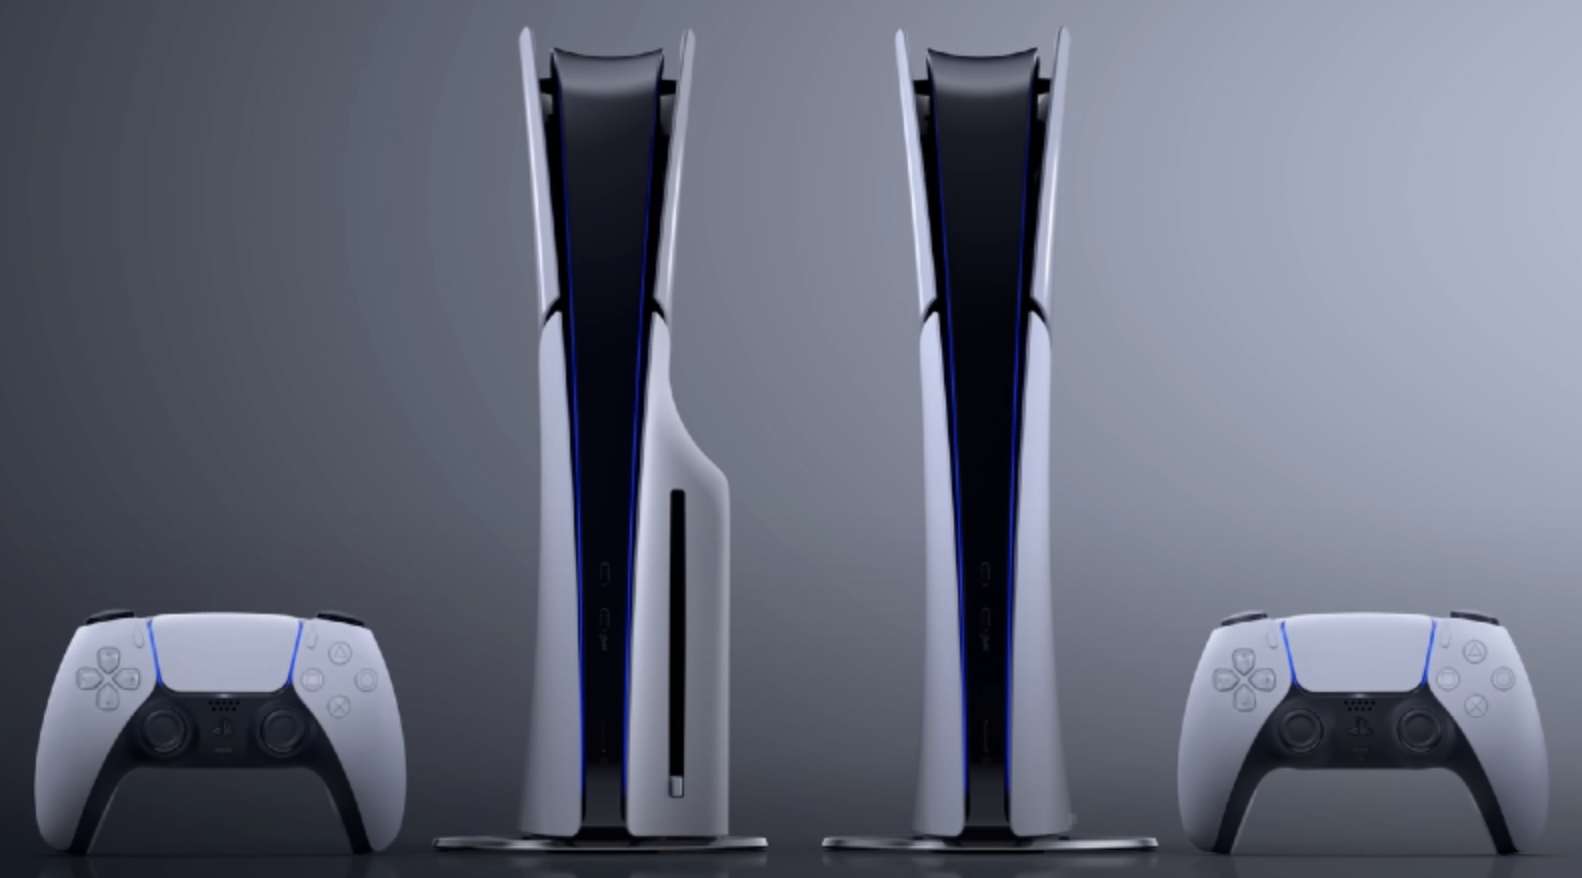 Nowe PS5 Slim za moment będzie dużo tańsze?! Świetna wiadomość!